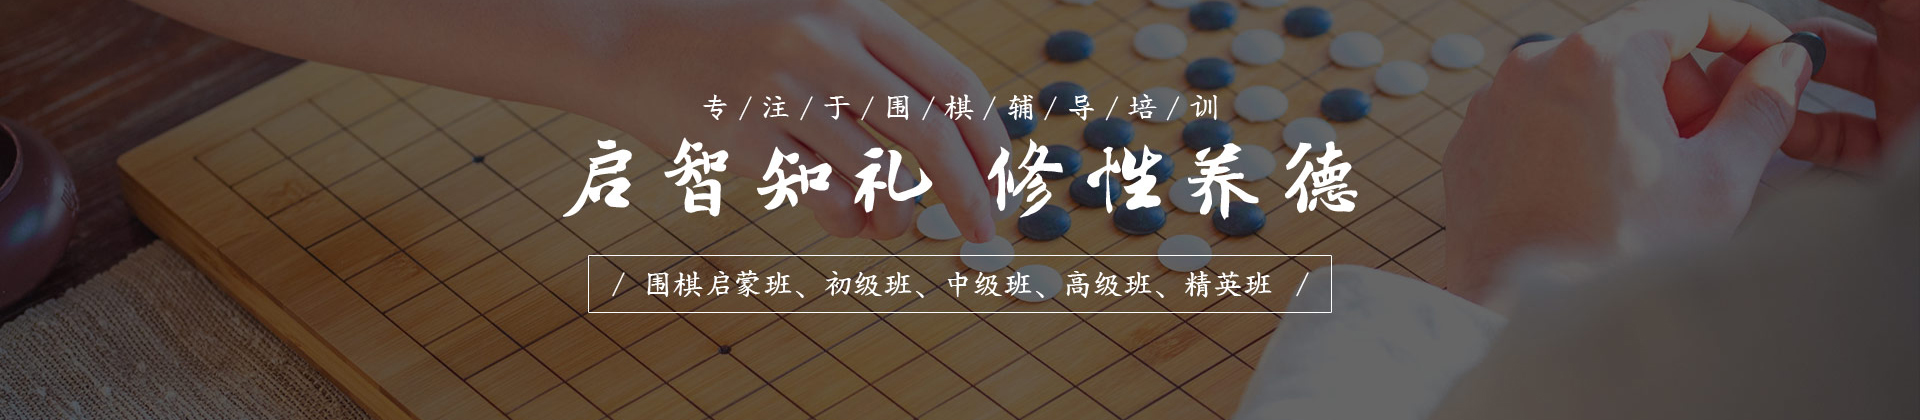 上海智韵少儿围棋学校